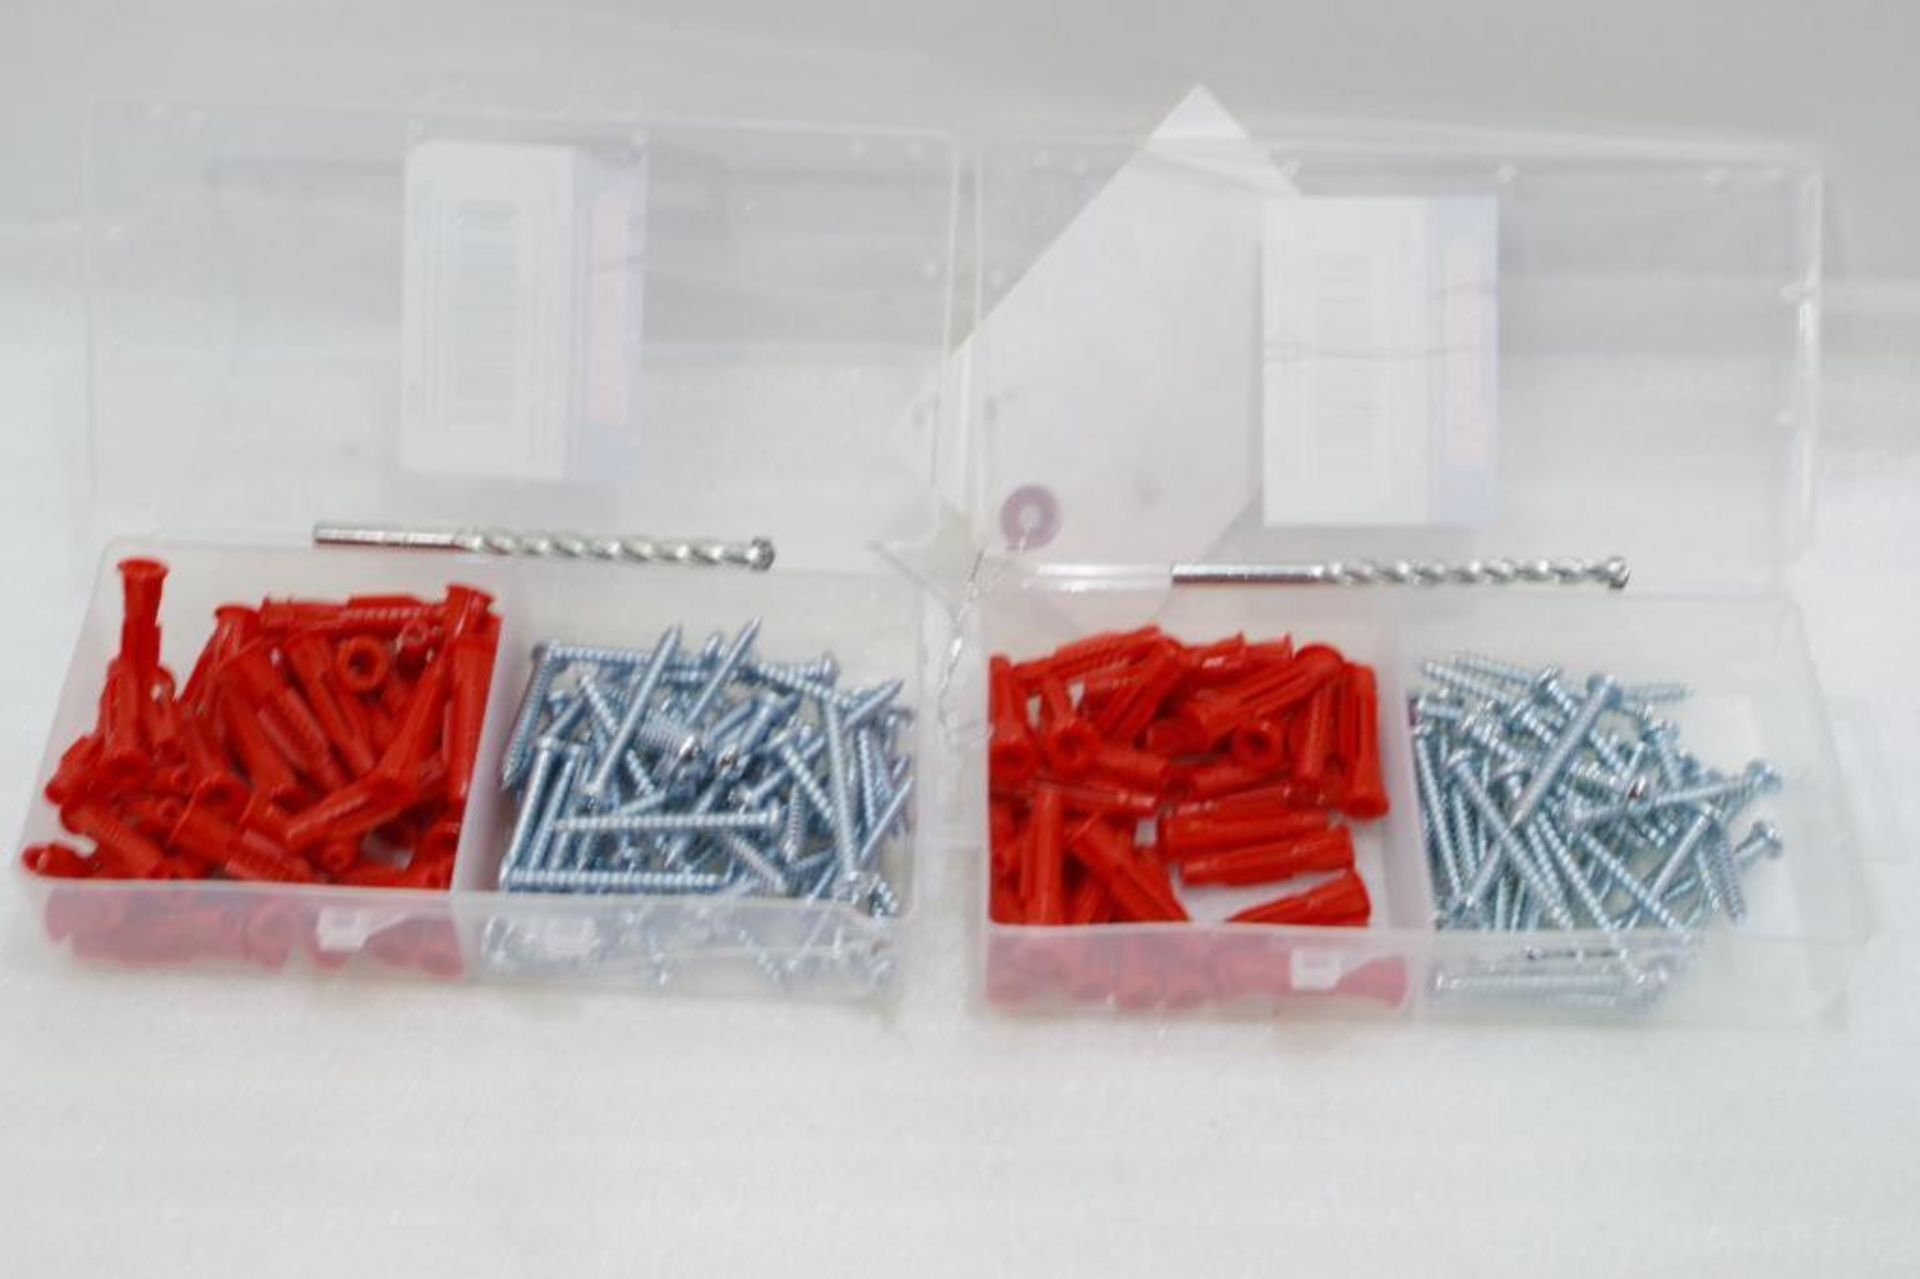 (2) Packs of WESTWARD Plastic Plug Anchors w/ Screws (2 Packs of 50 Each) - Image 2 of 4